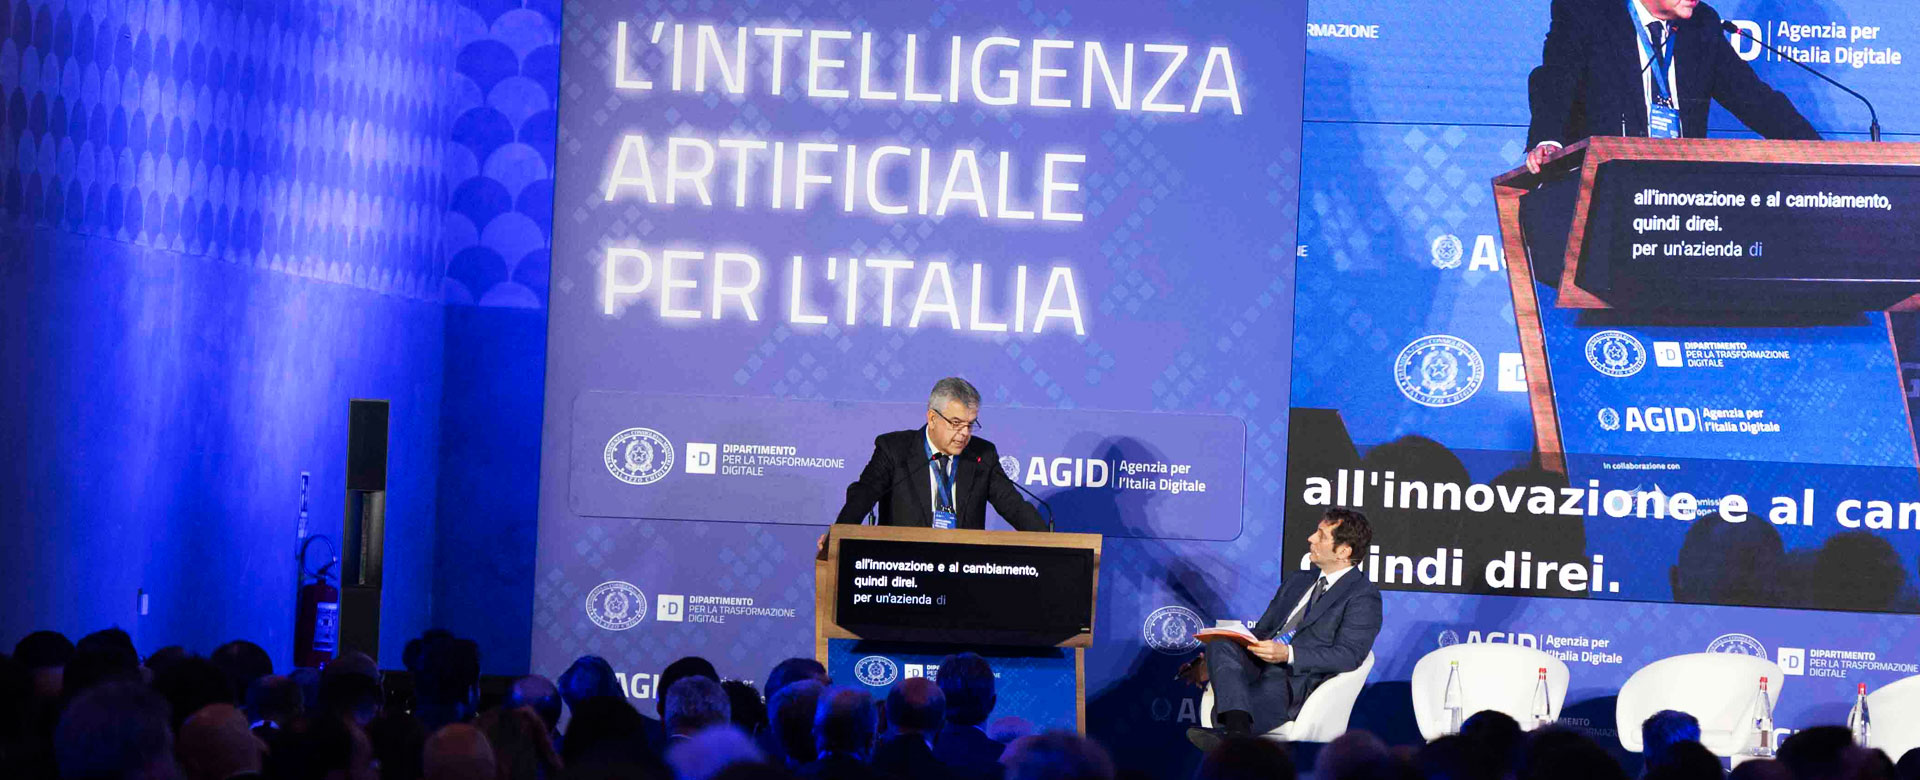 Luigi Ferraris, AD del Gruppo FS, interviene all'evento“L’intelligenza artificiale per l’Italia”, organizzato a Roma dal Dipartimento per la Trasformazione Digitale